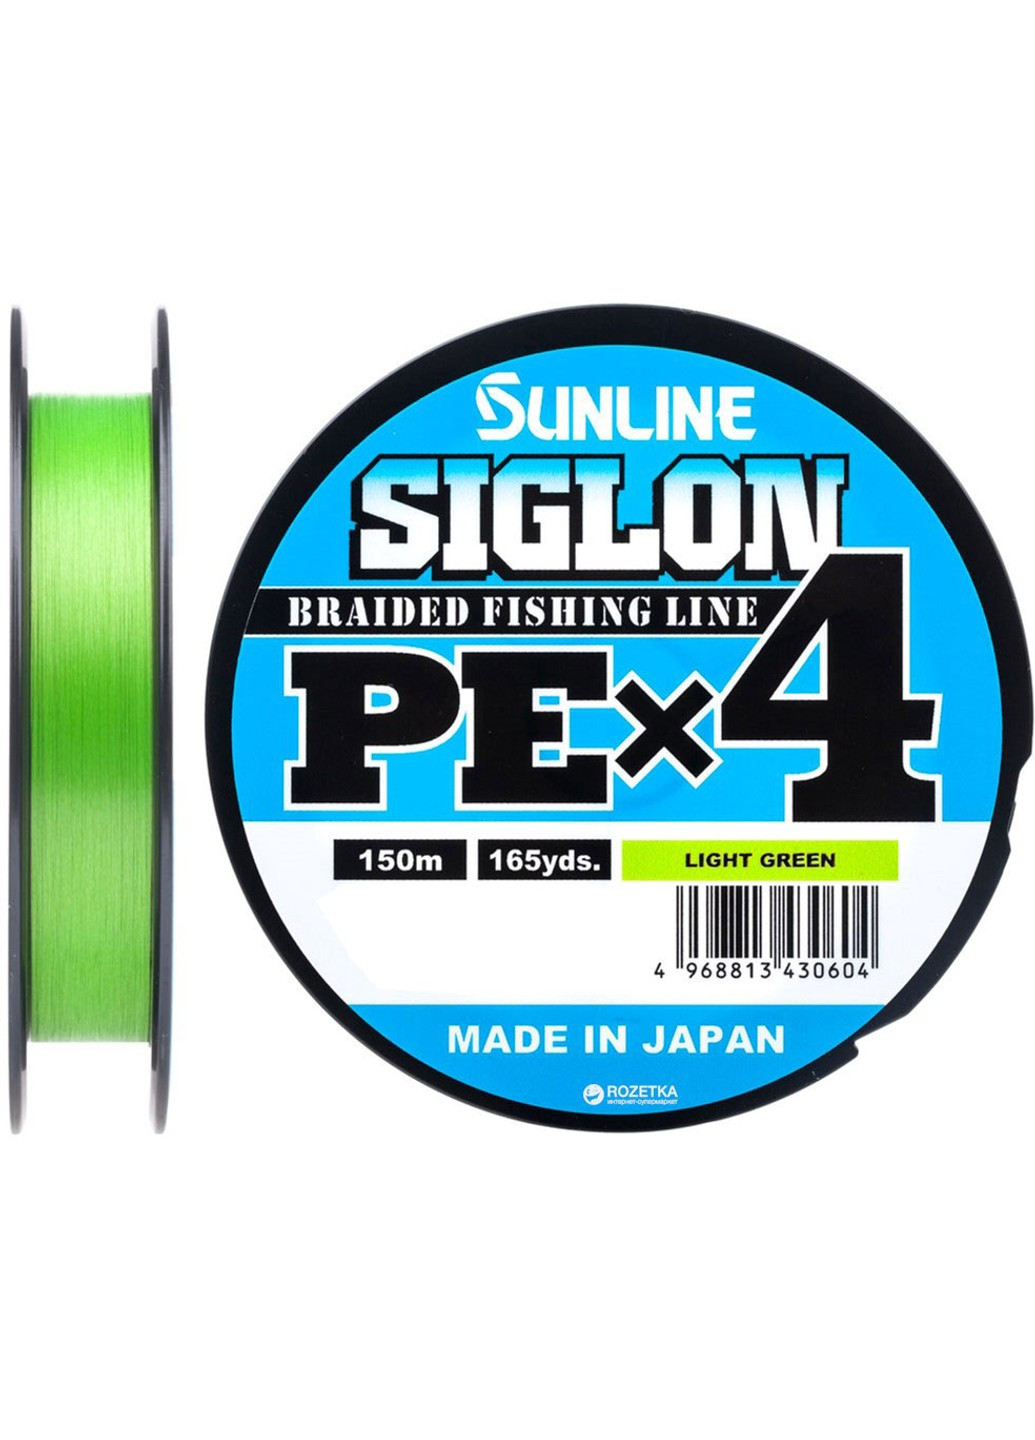 1658-09-00 Шнур Siglon PE х4 150m (салат.) # 0.2 / 0.076mm 3lb / 1.6kg Sunline (252468637)